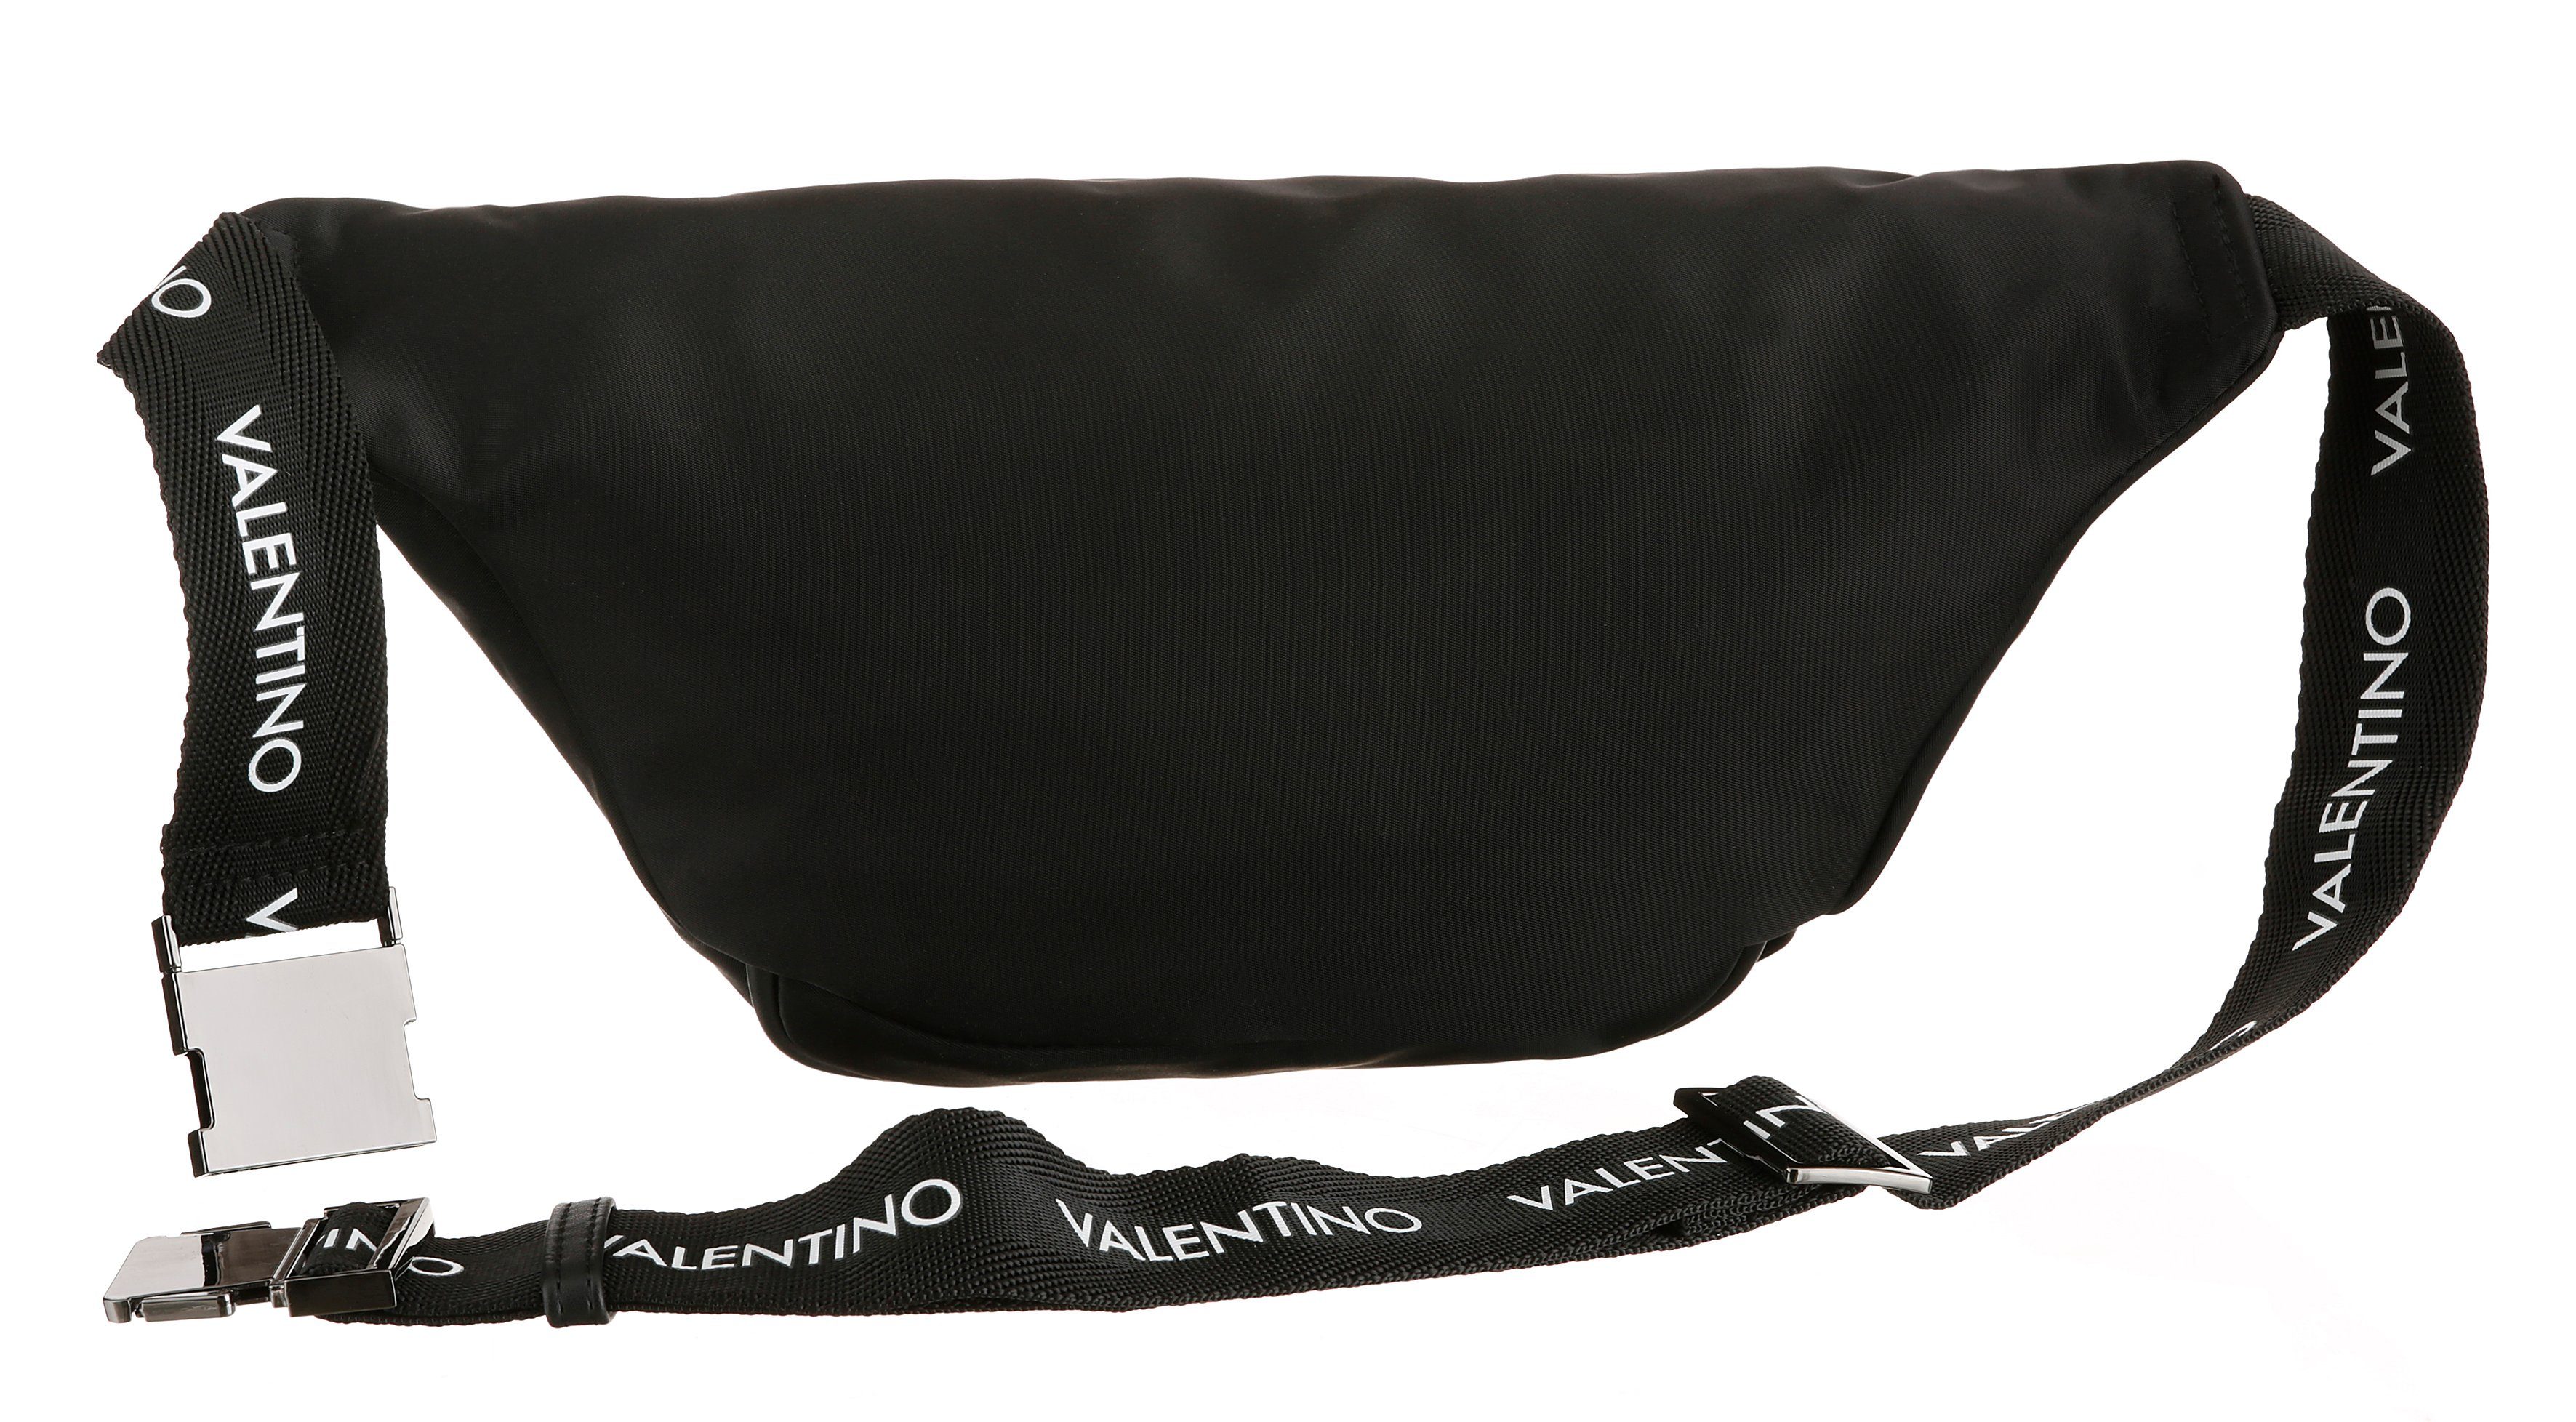 VALENTINO BAGS Bauchtasche, mit Schriftzug Bauchgurt auf dem Logo